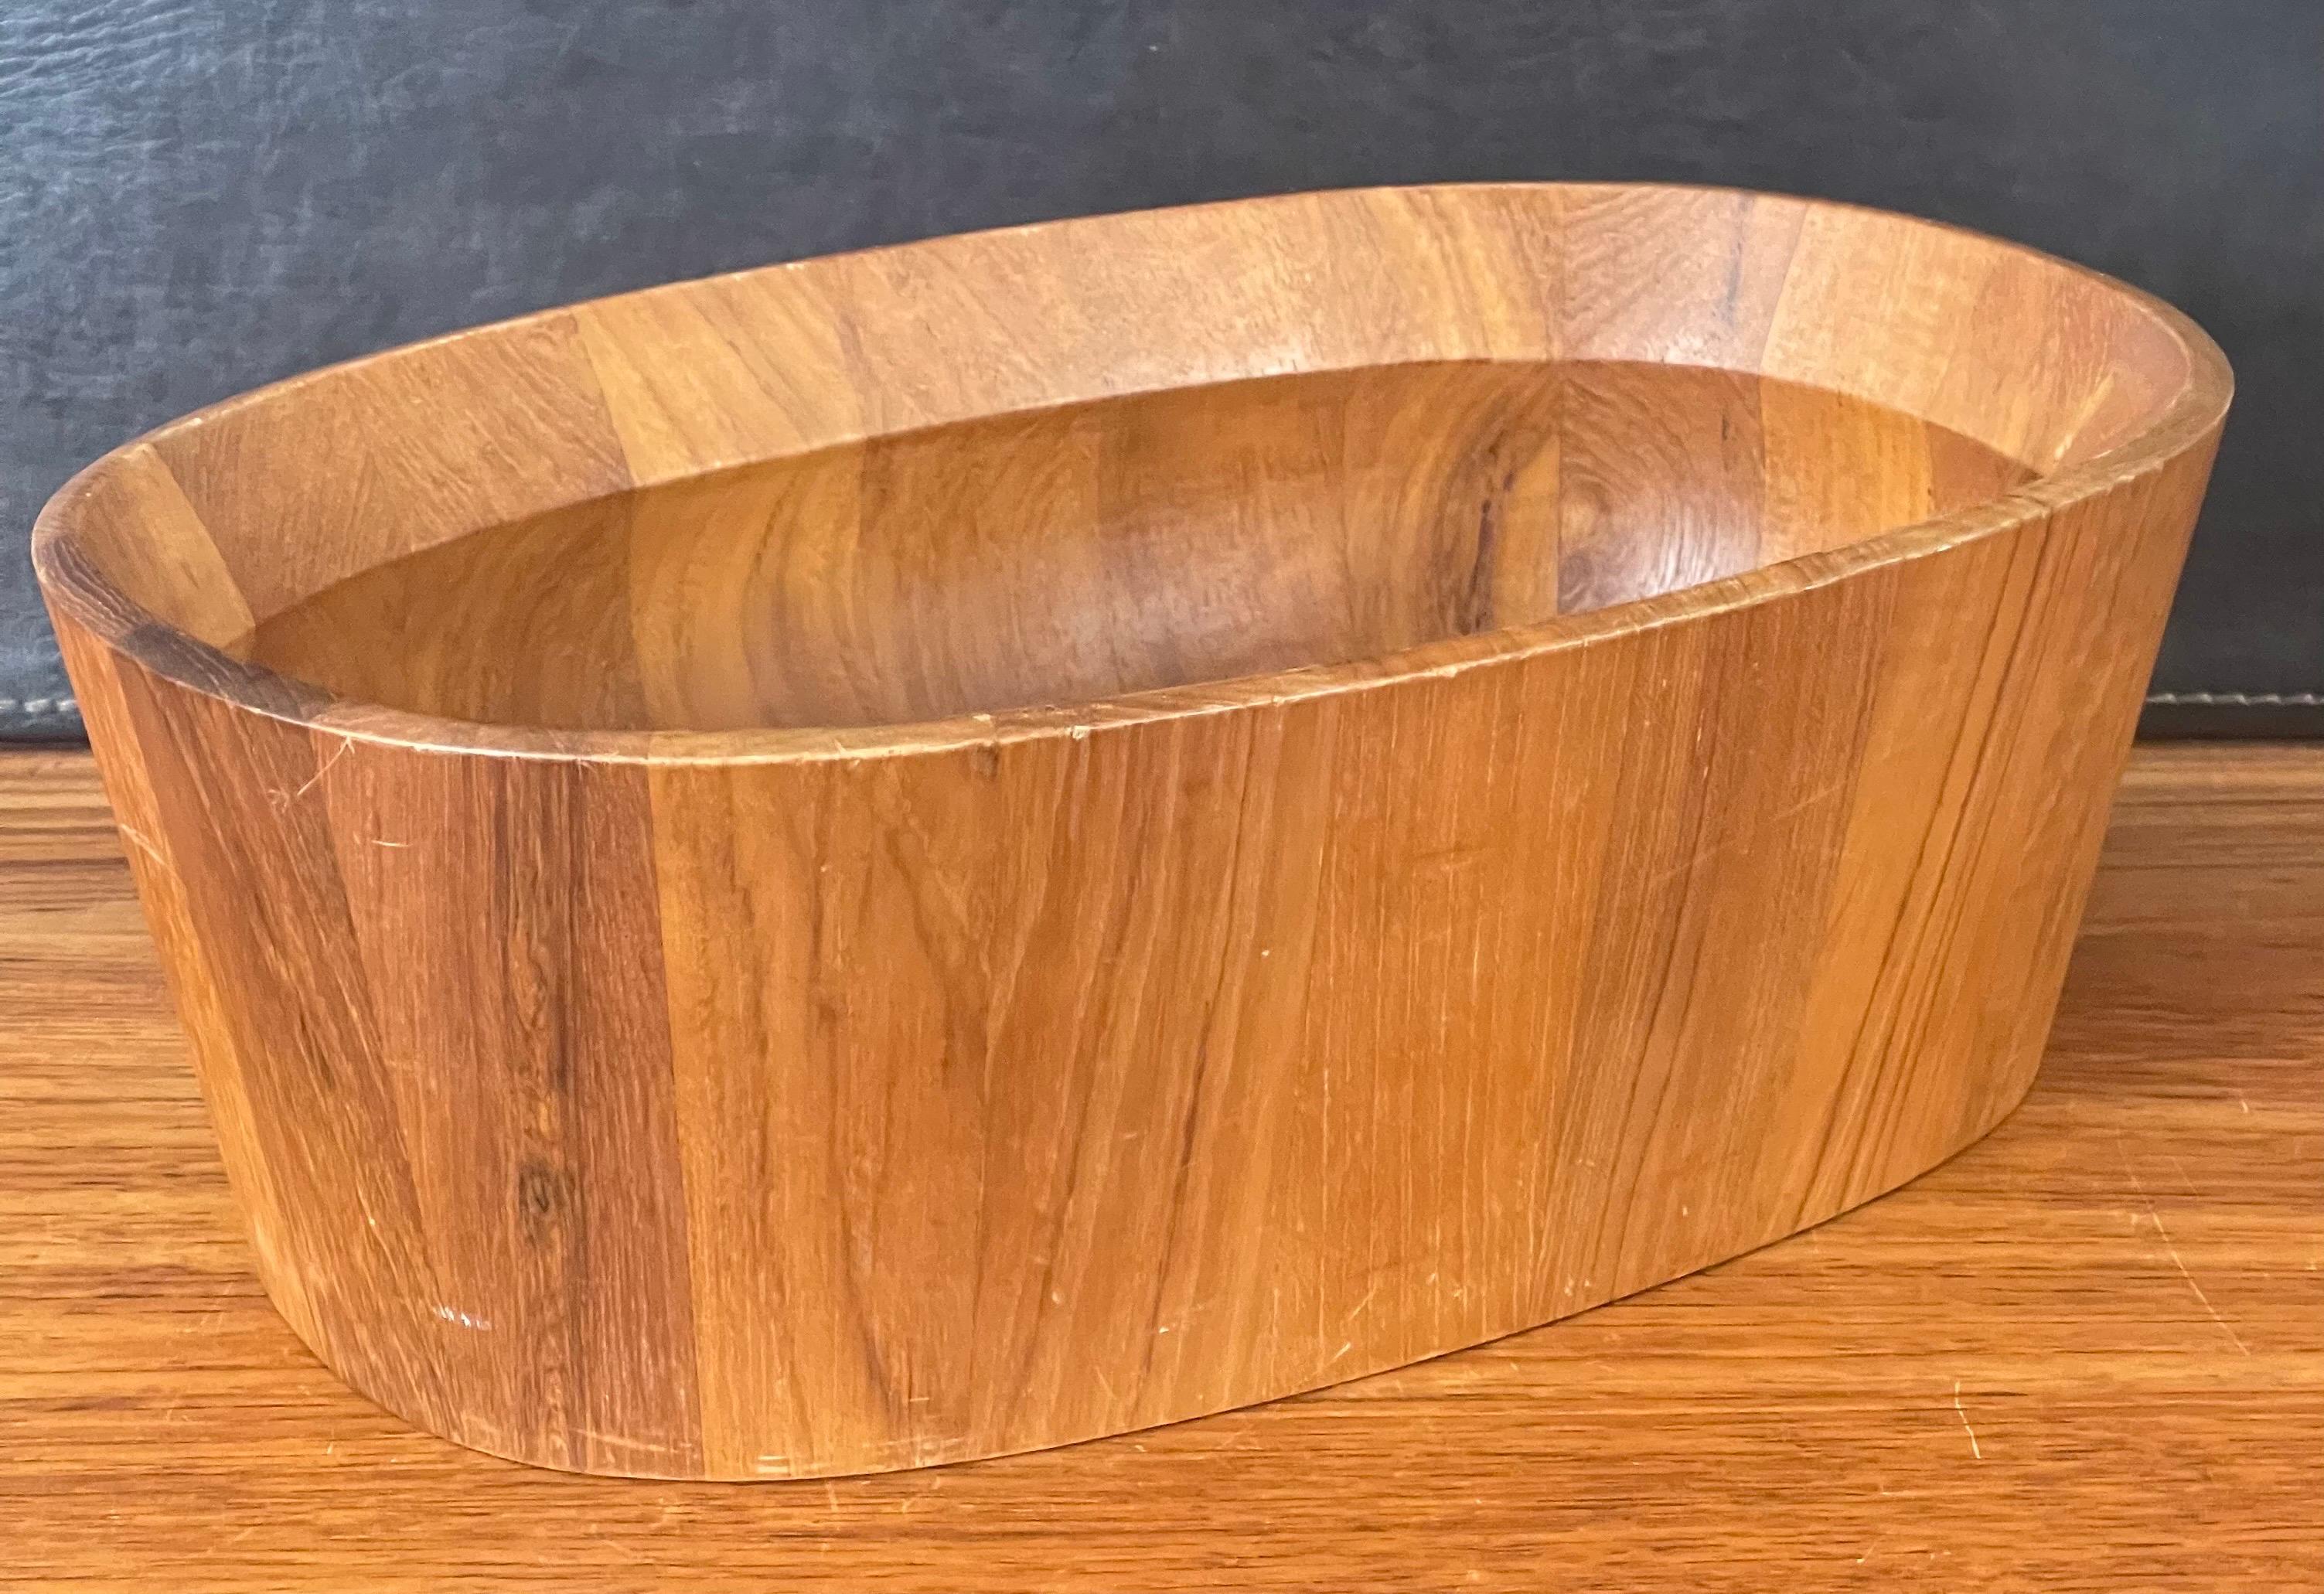 Danish Modern Oval Shaped Staved Teak Bowl by Jens Quistgaard for Dansk For Sale 1